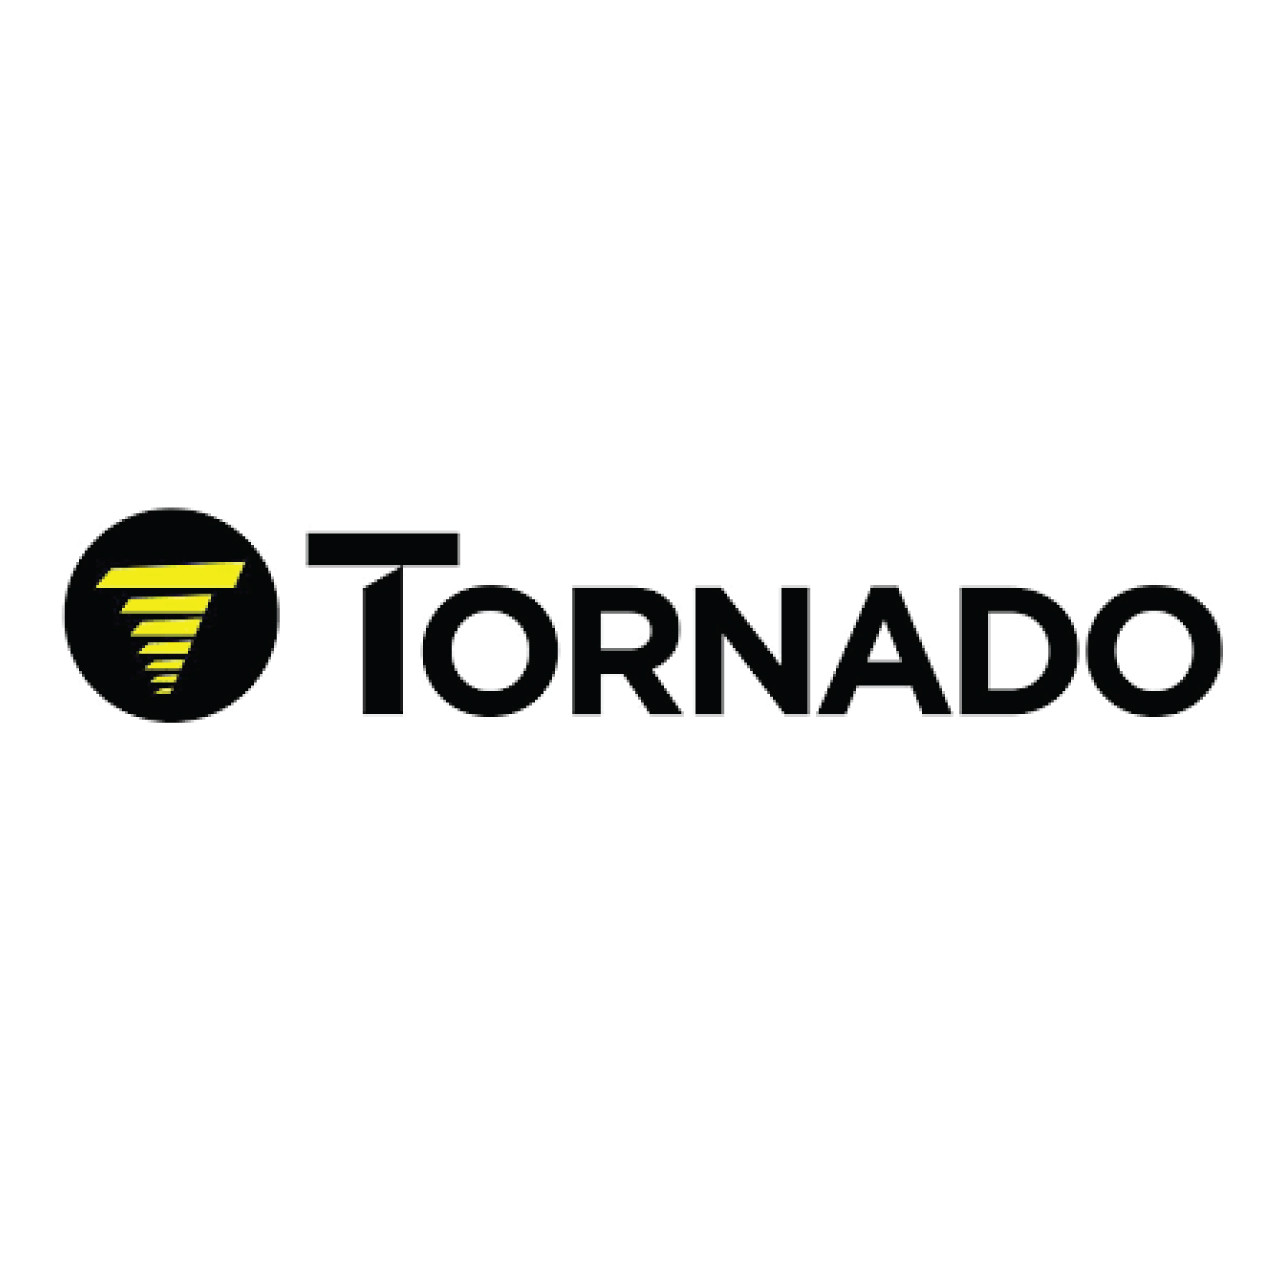 02-4622-0000, Tornado 02-4622-0000, Tornado WIRE NUT CONNECTOR, Tornado parts